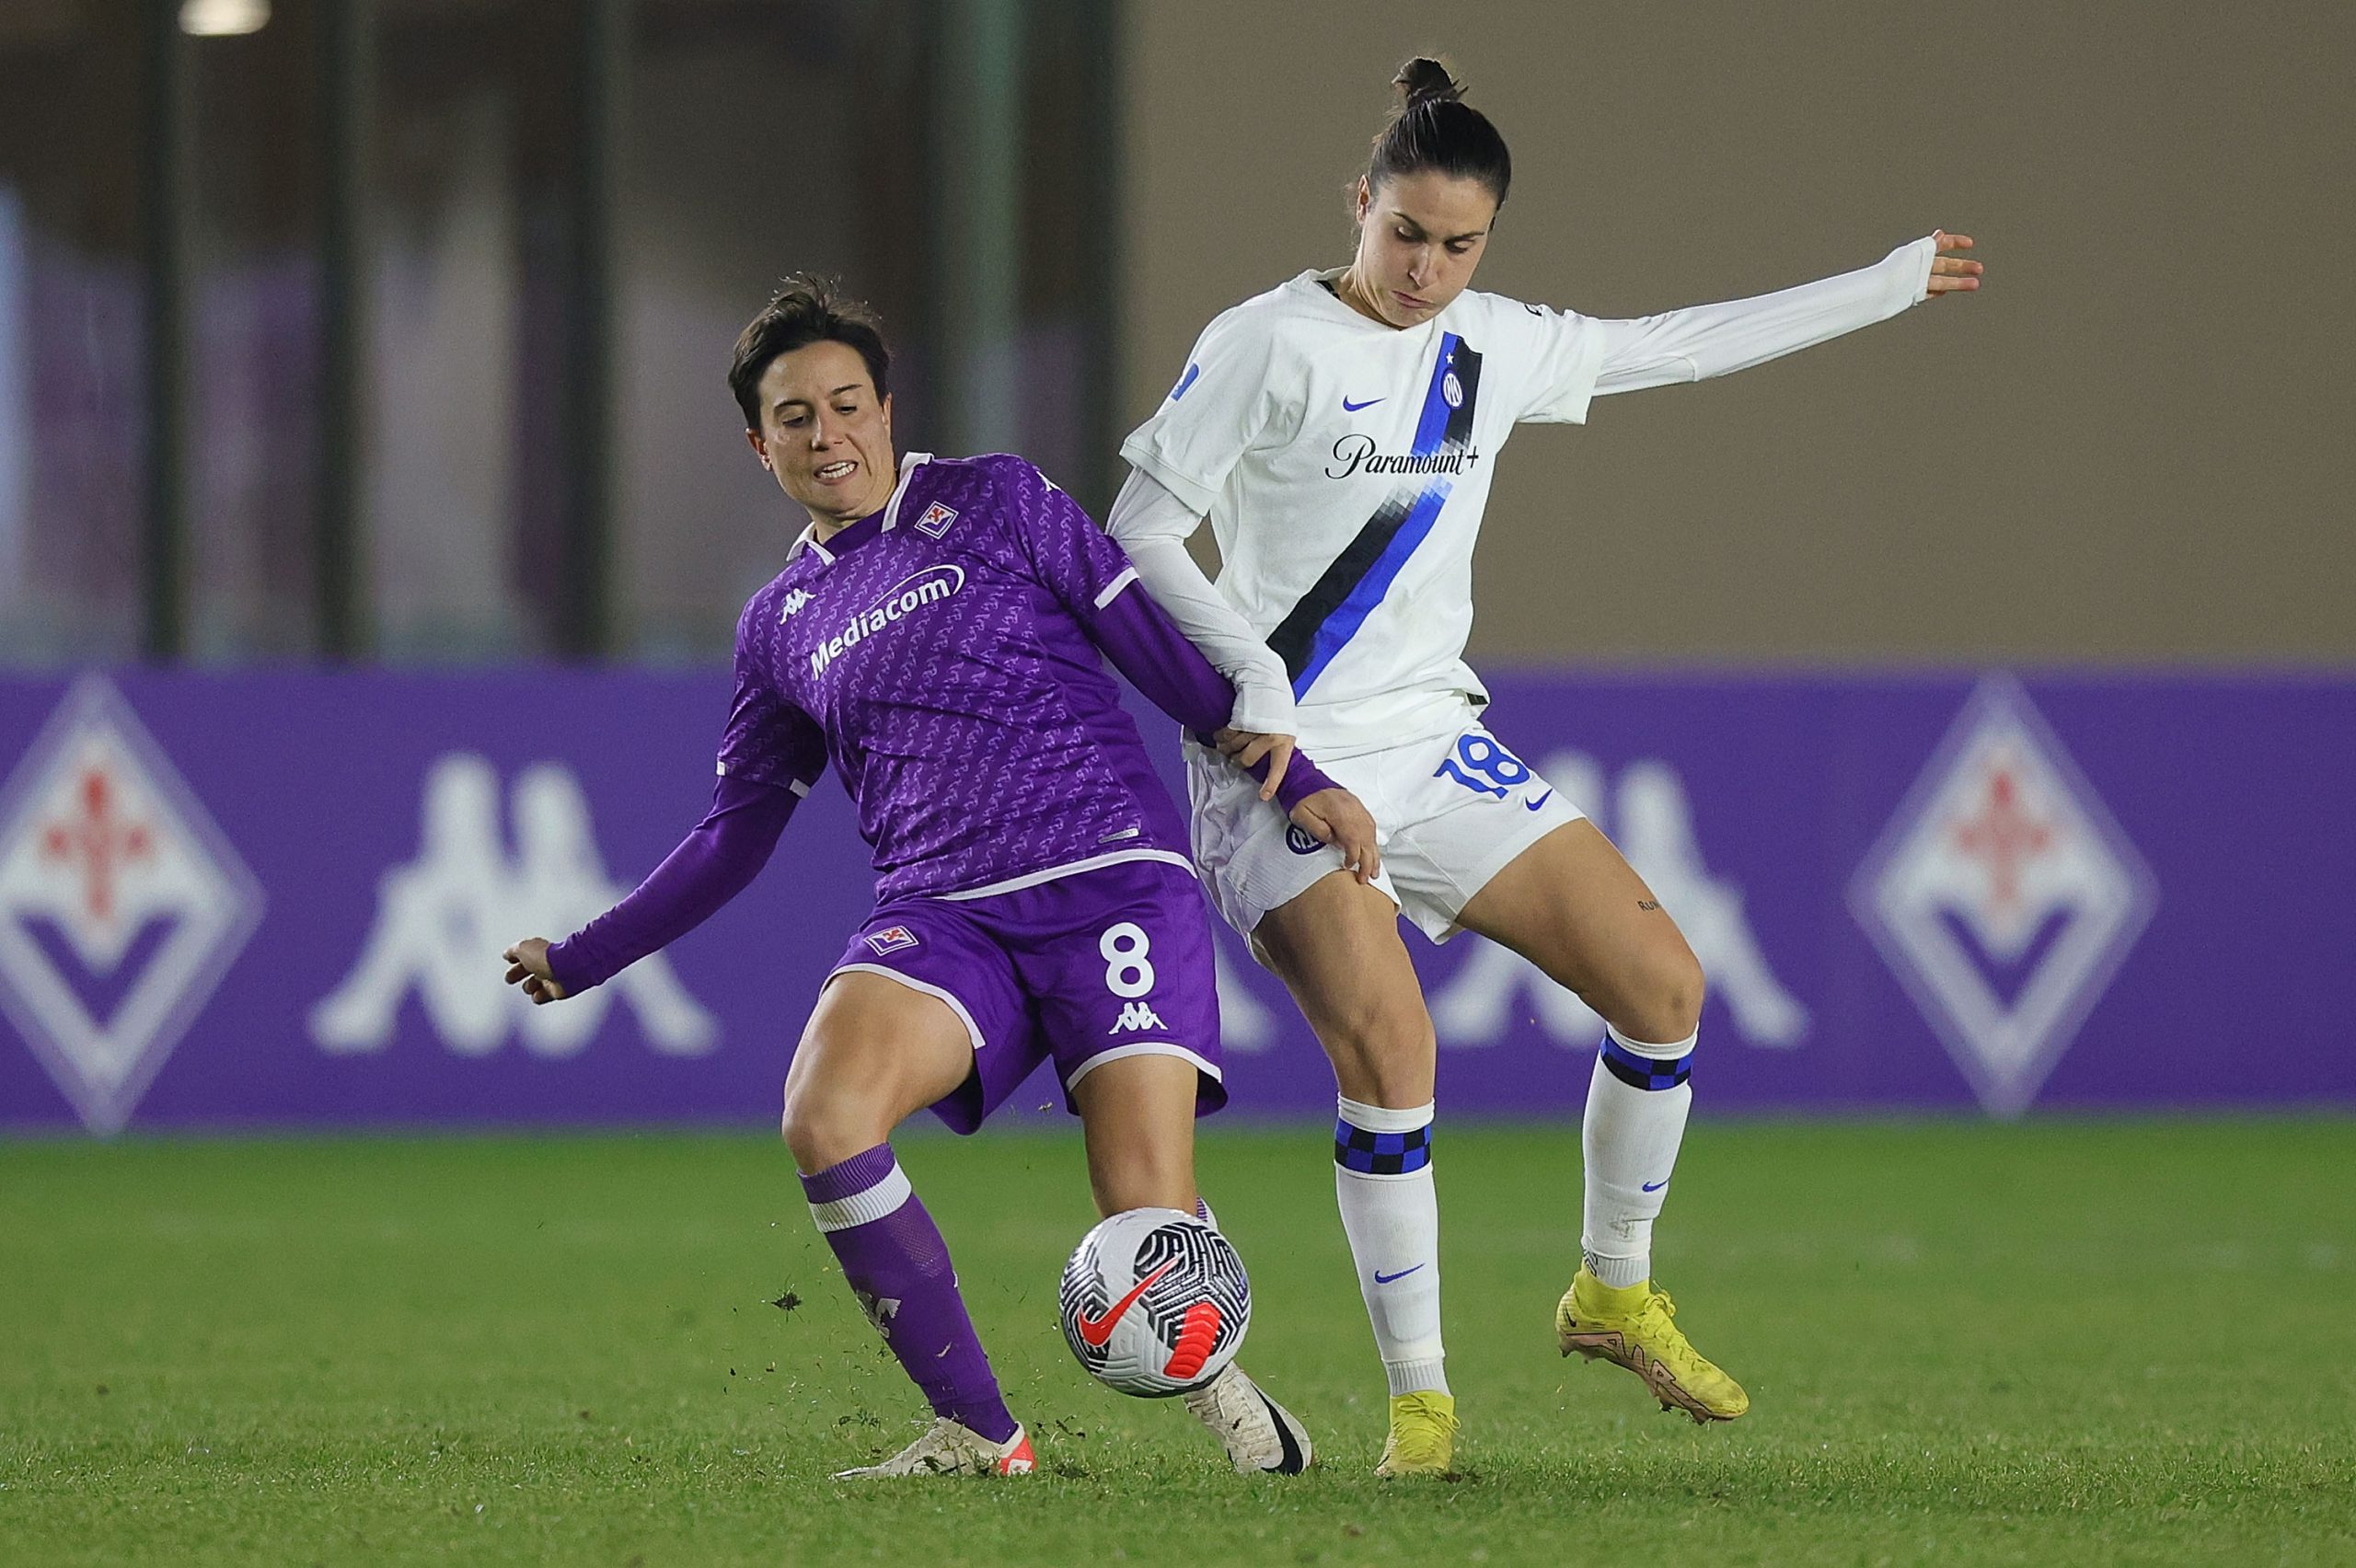 Marta Pandini e Alice Parisi in Fiorentina-Inter Women